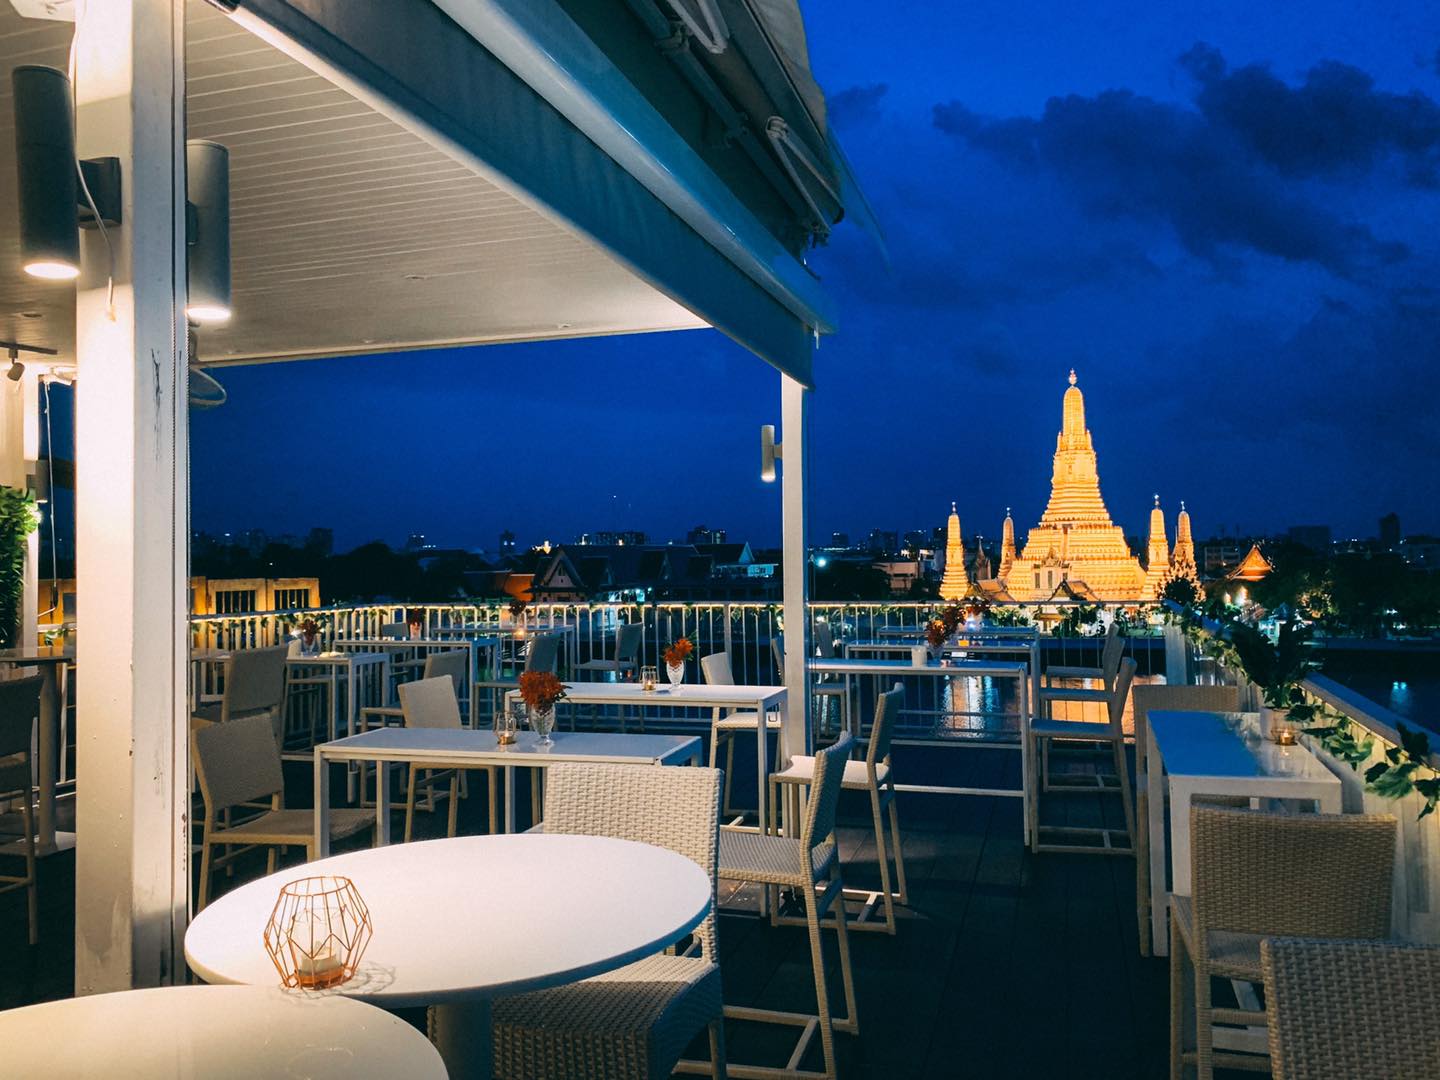 วิว อรุณ (View ARUN - Rooftop Restaurant & Bar) : กรุงเทพมหานคร (Bangkok)